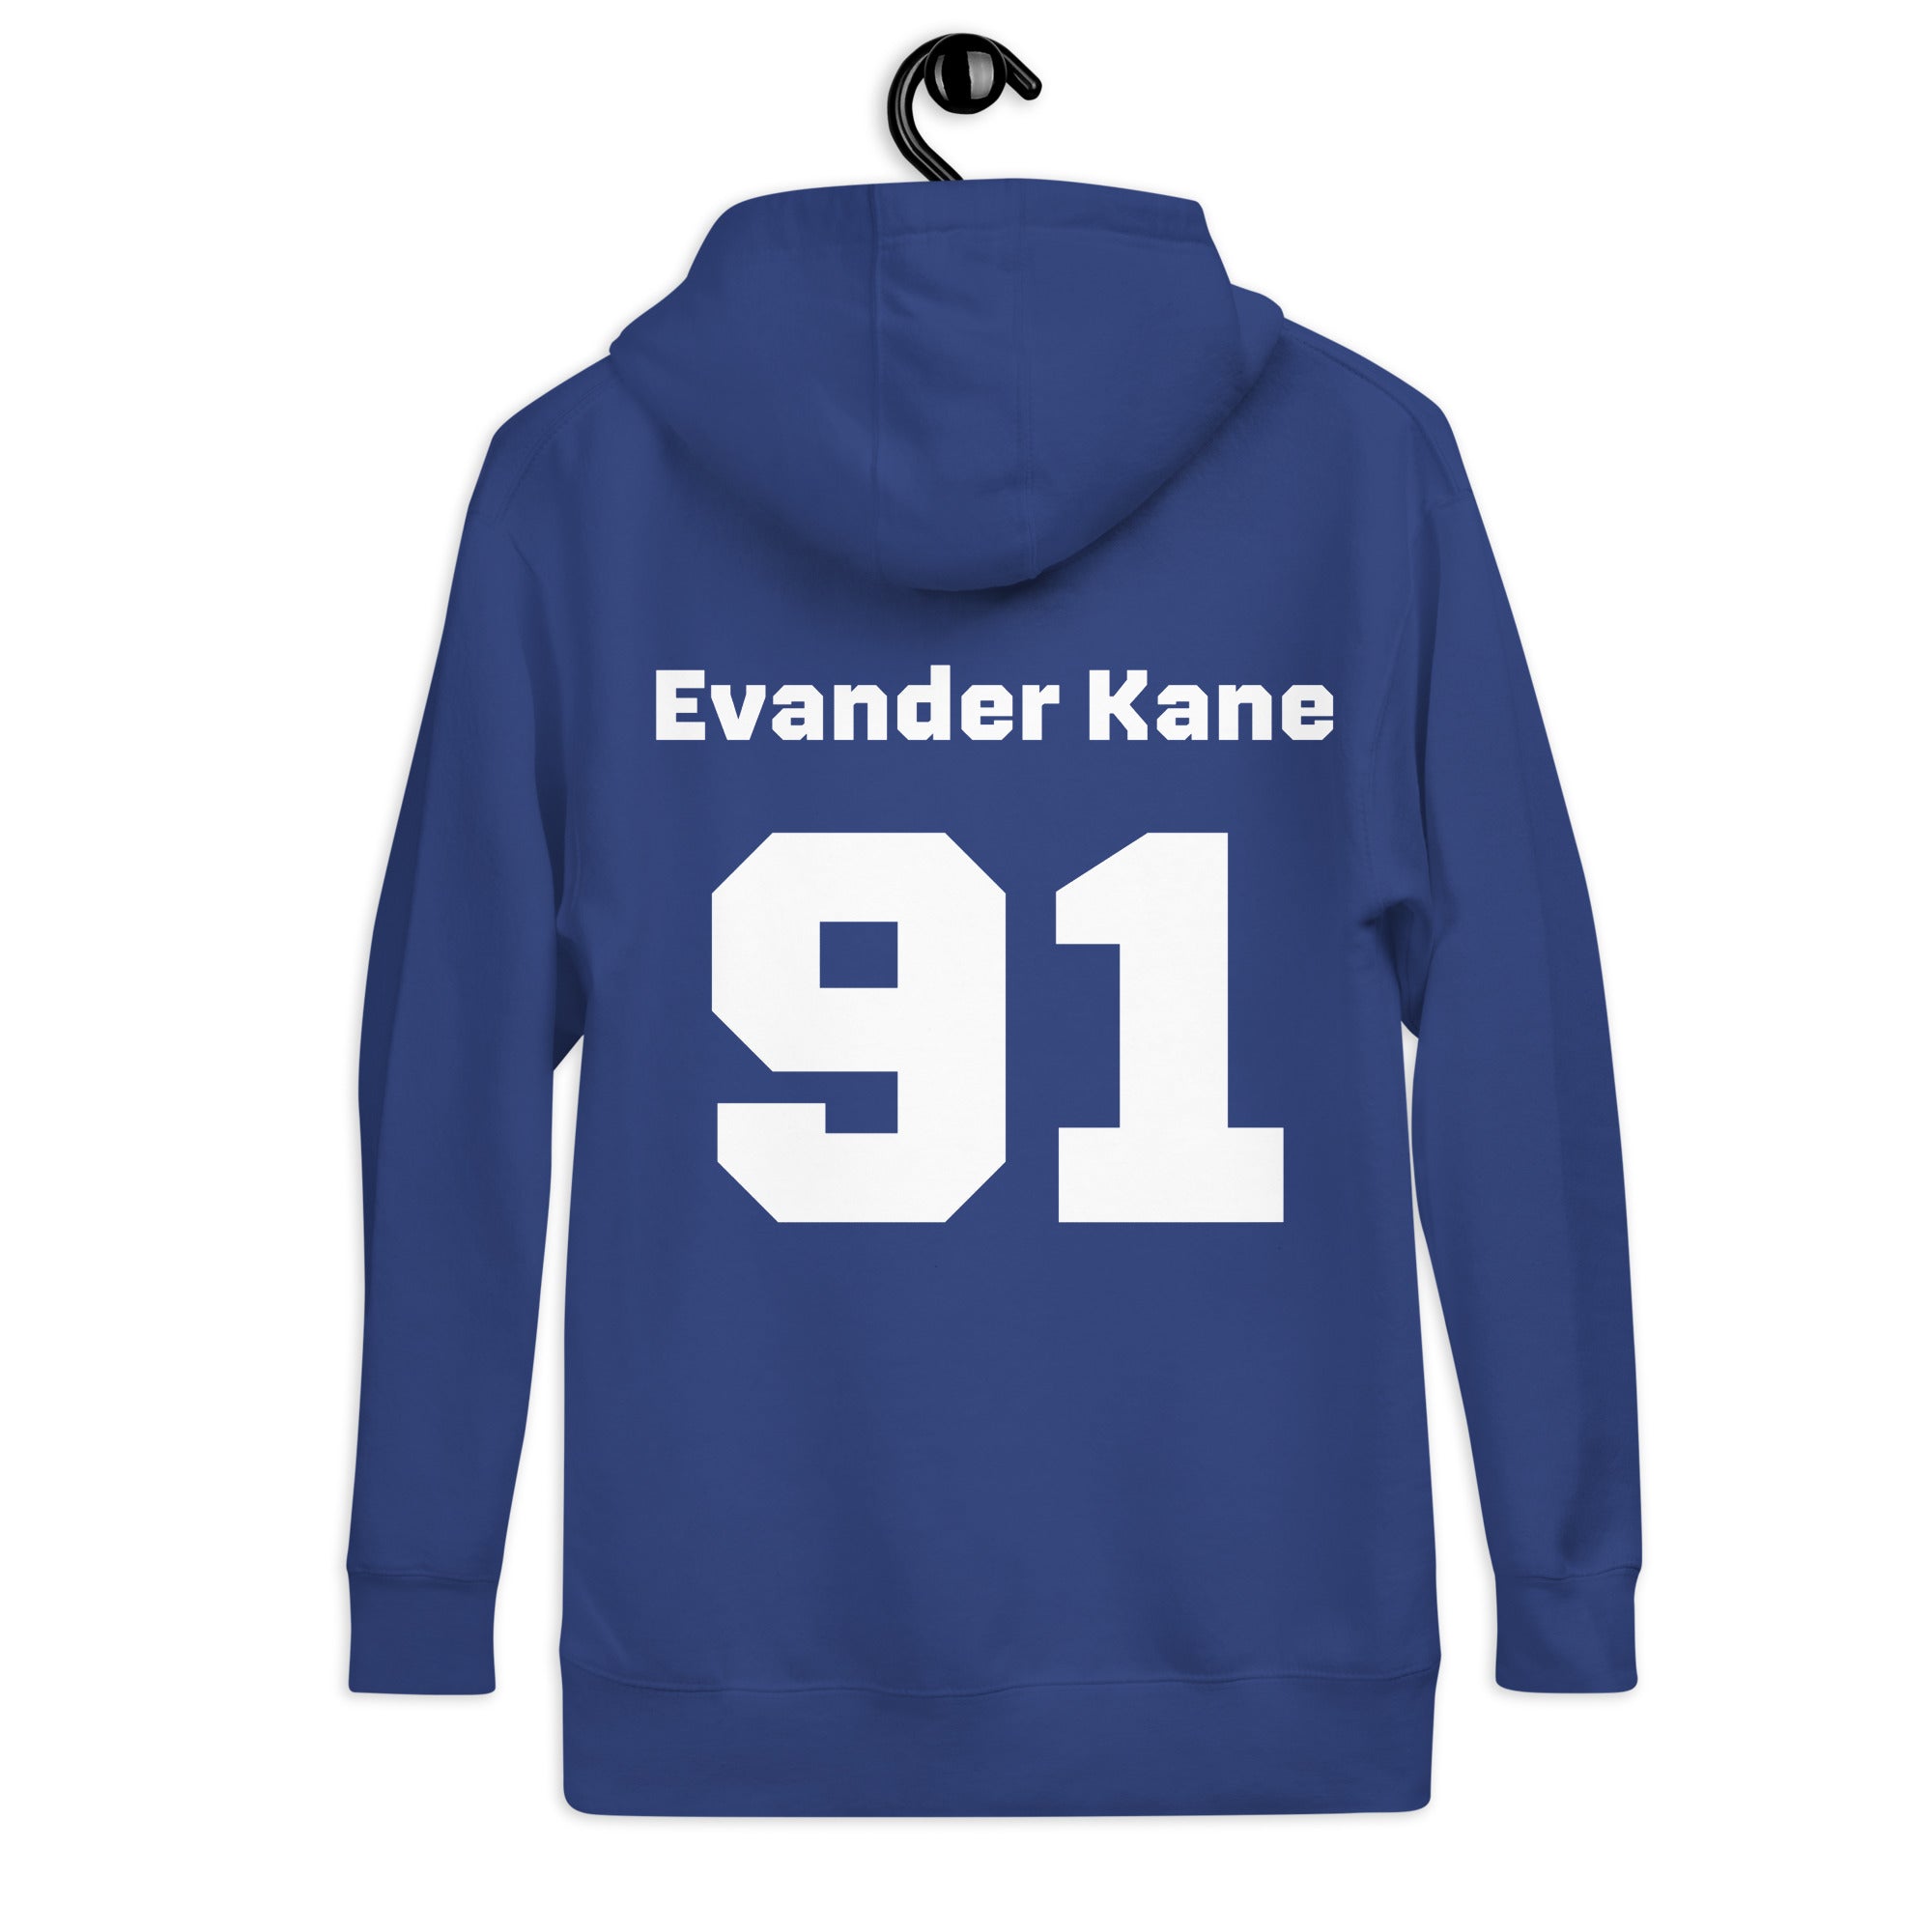 Evander Kane - Unisex Hoodie